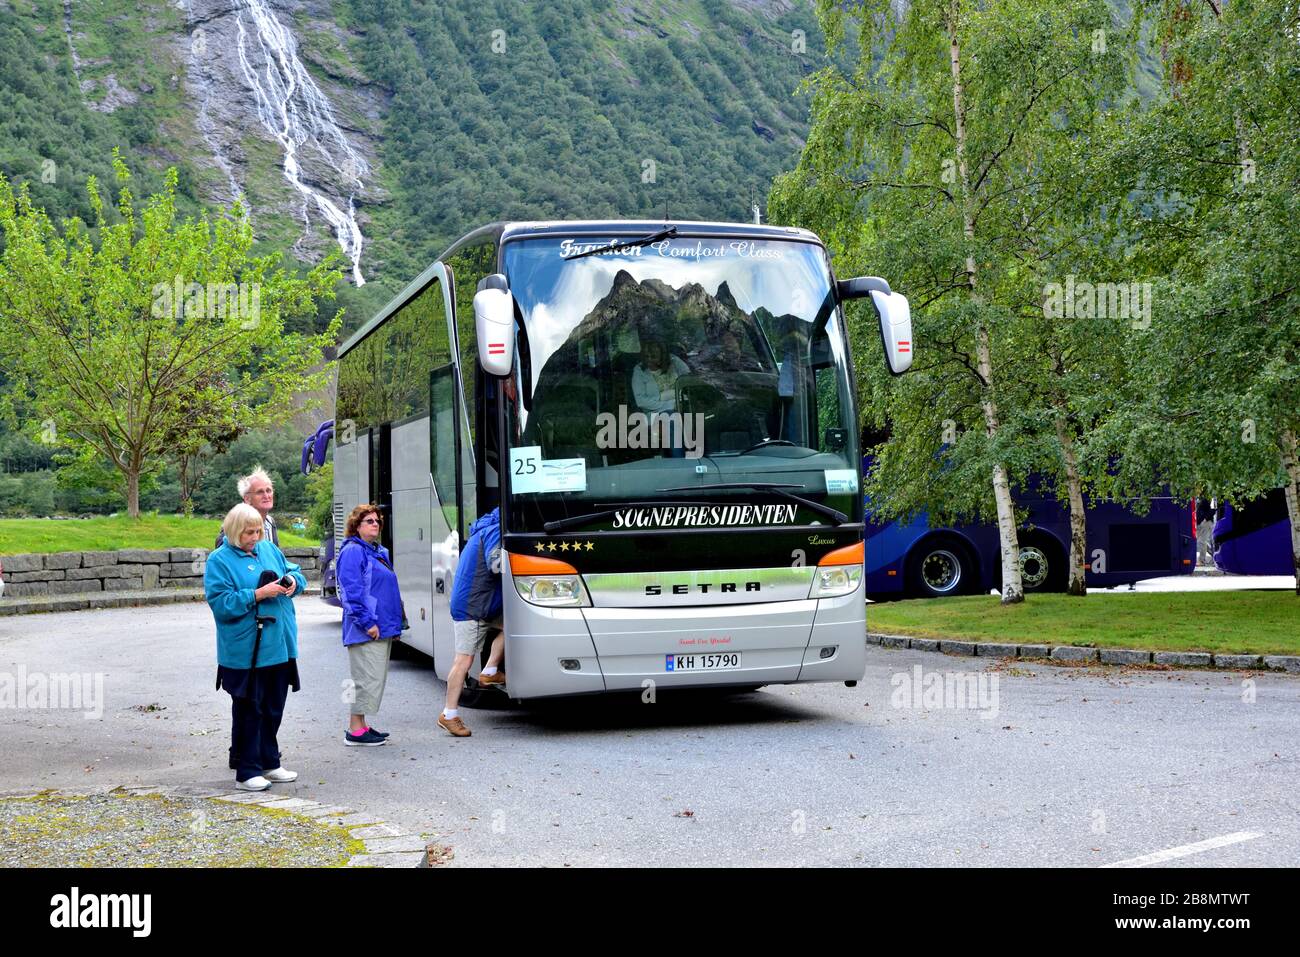 L'autocar Sogneprésidentienten Setra Comfort KH 15790 est vu à Oye, en Norvège, lors d'une excursion P & O. Oye est situé à la tête d'un petit bras de Hjorundfjord Banque D'Images